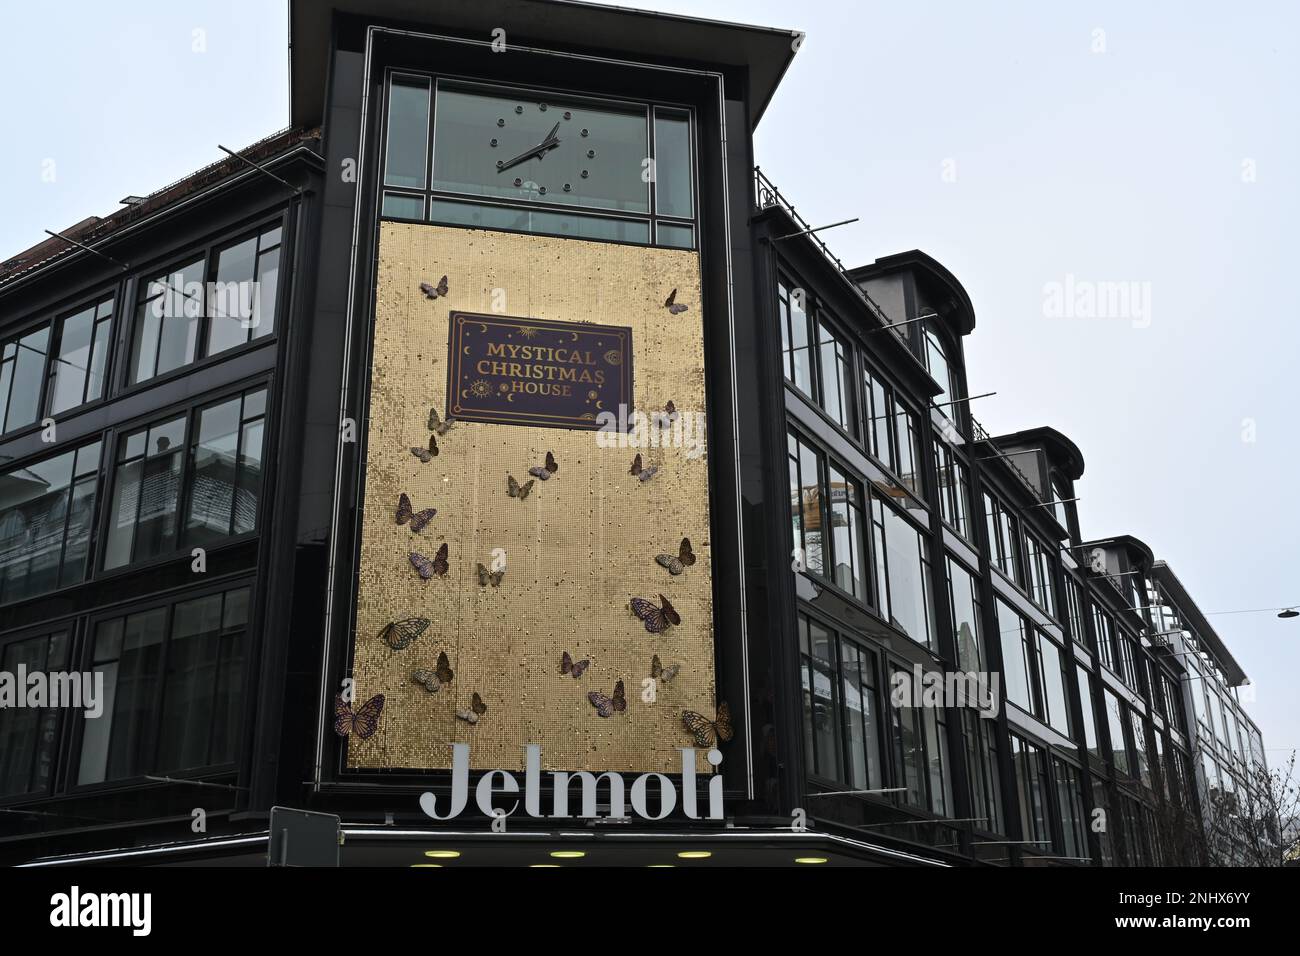 Jelmoli, Einkaufszentrum im Zentrum von Zürich, das luxuriöse Designerkleidung, Accessoires, Schmuck und Haushaltsartikel verkauft. Stockfoto